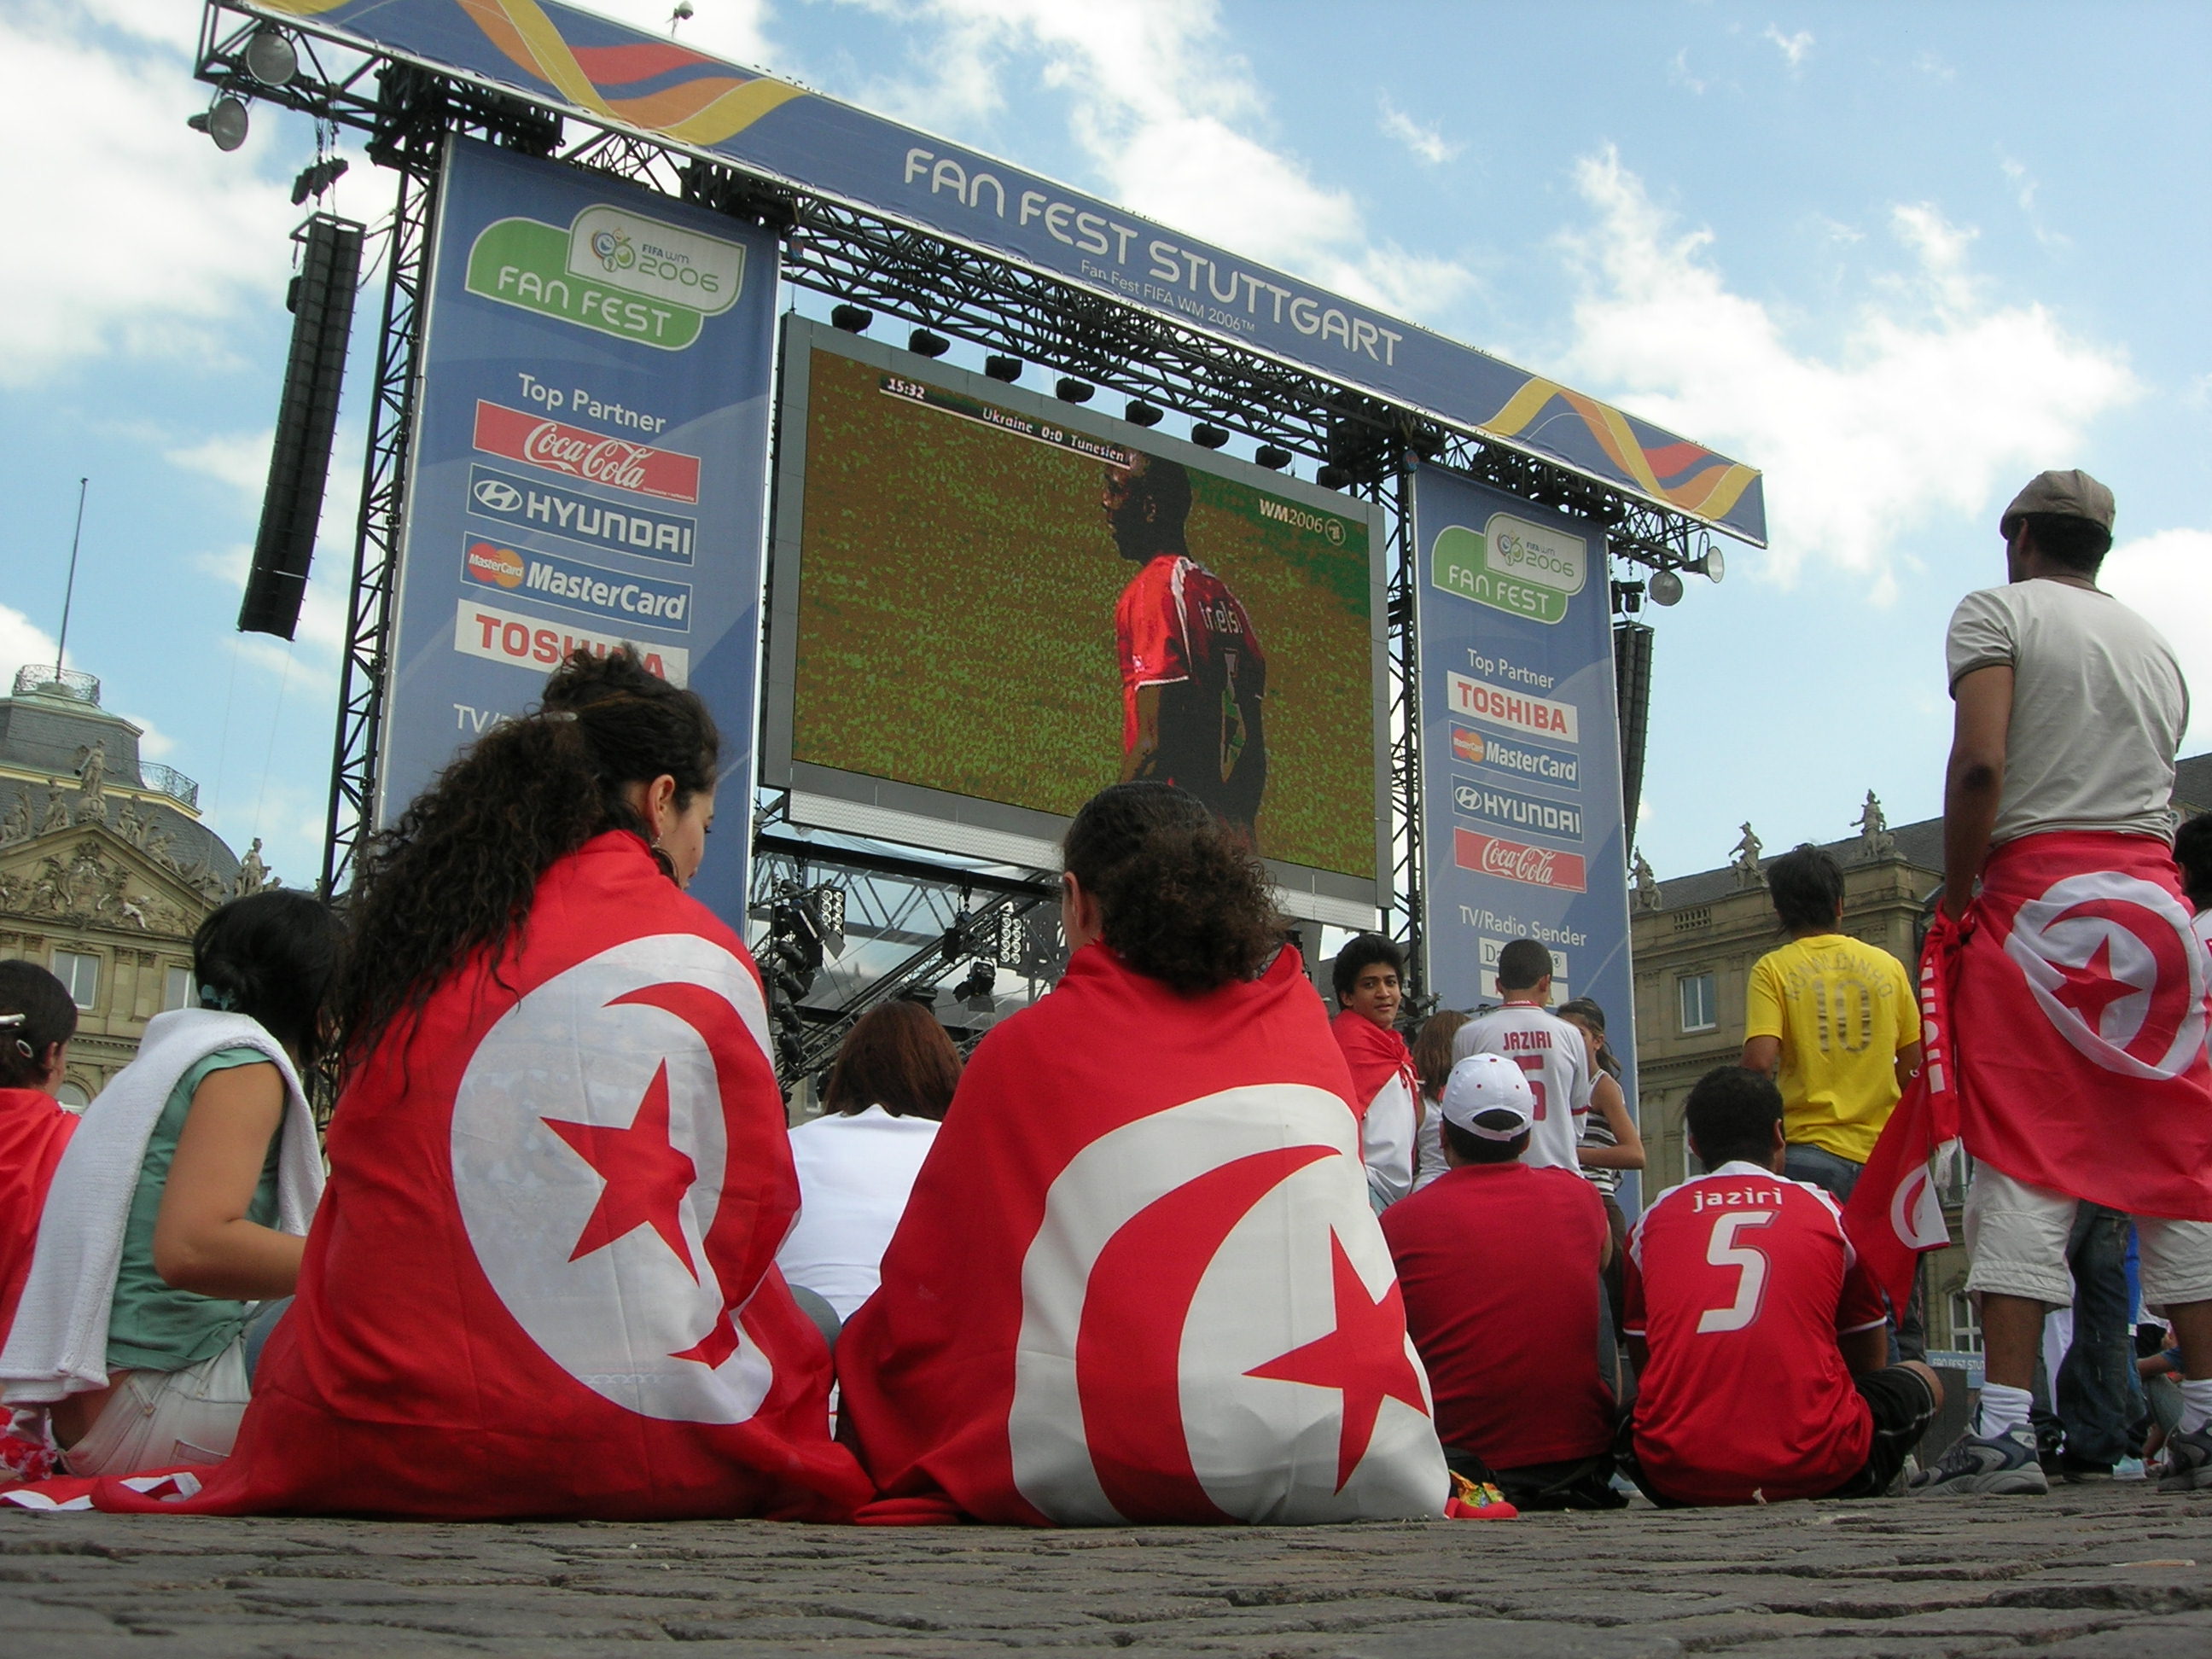 Les meilleures salles de sport à Tunis : Notre sélection